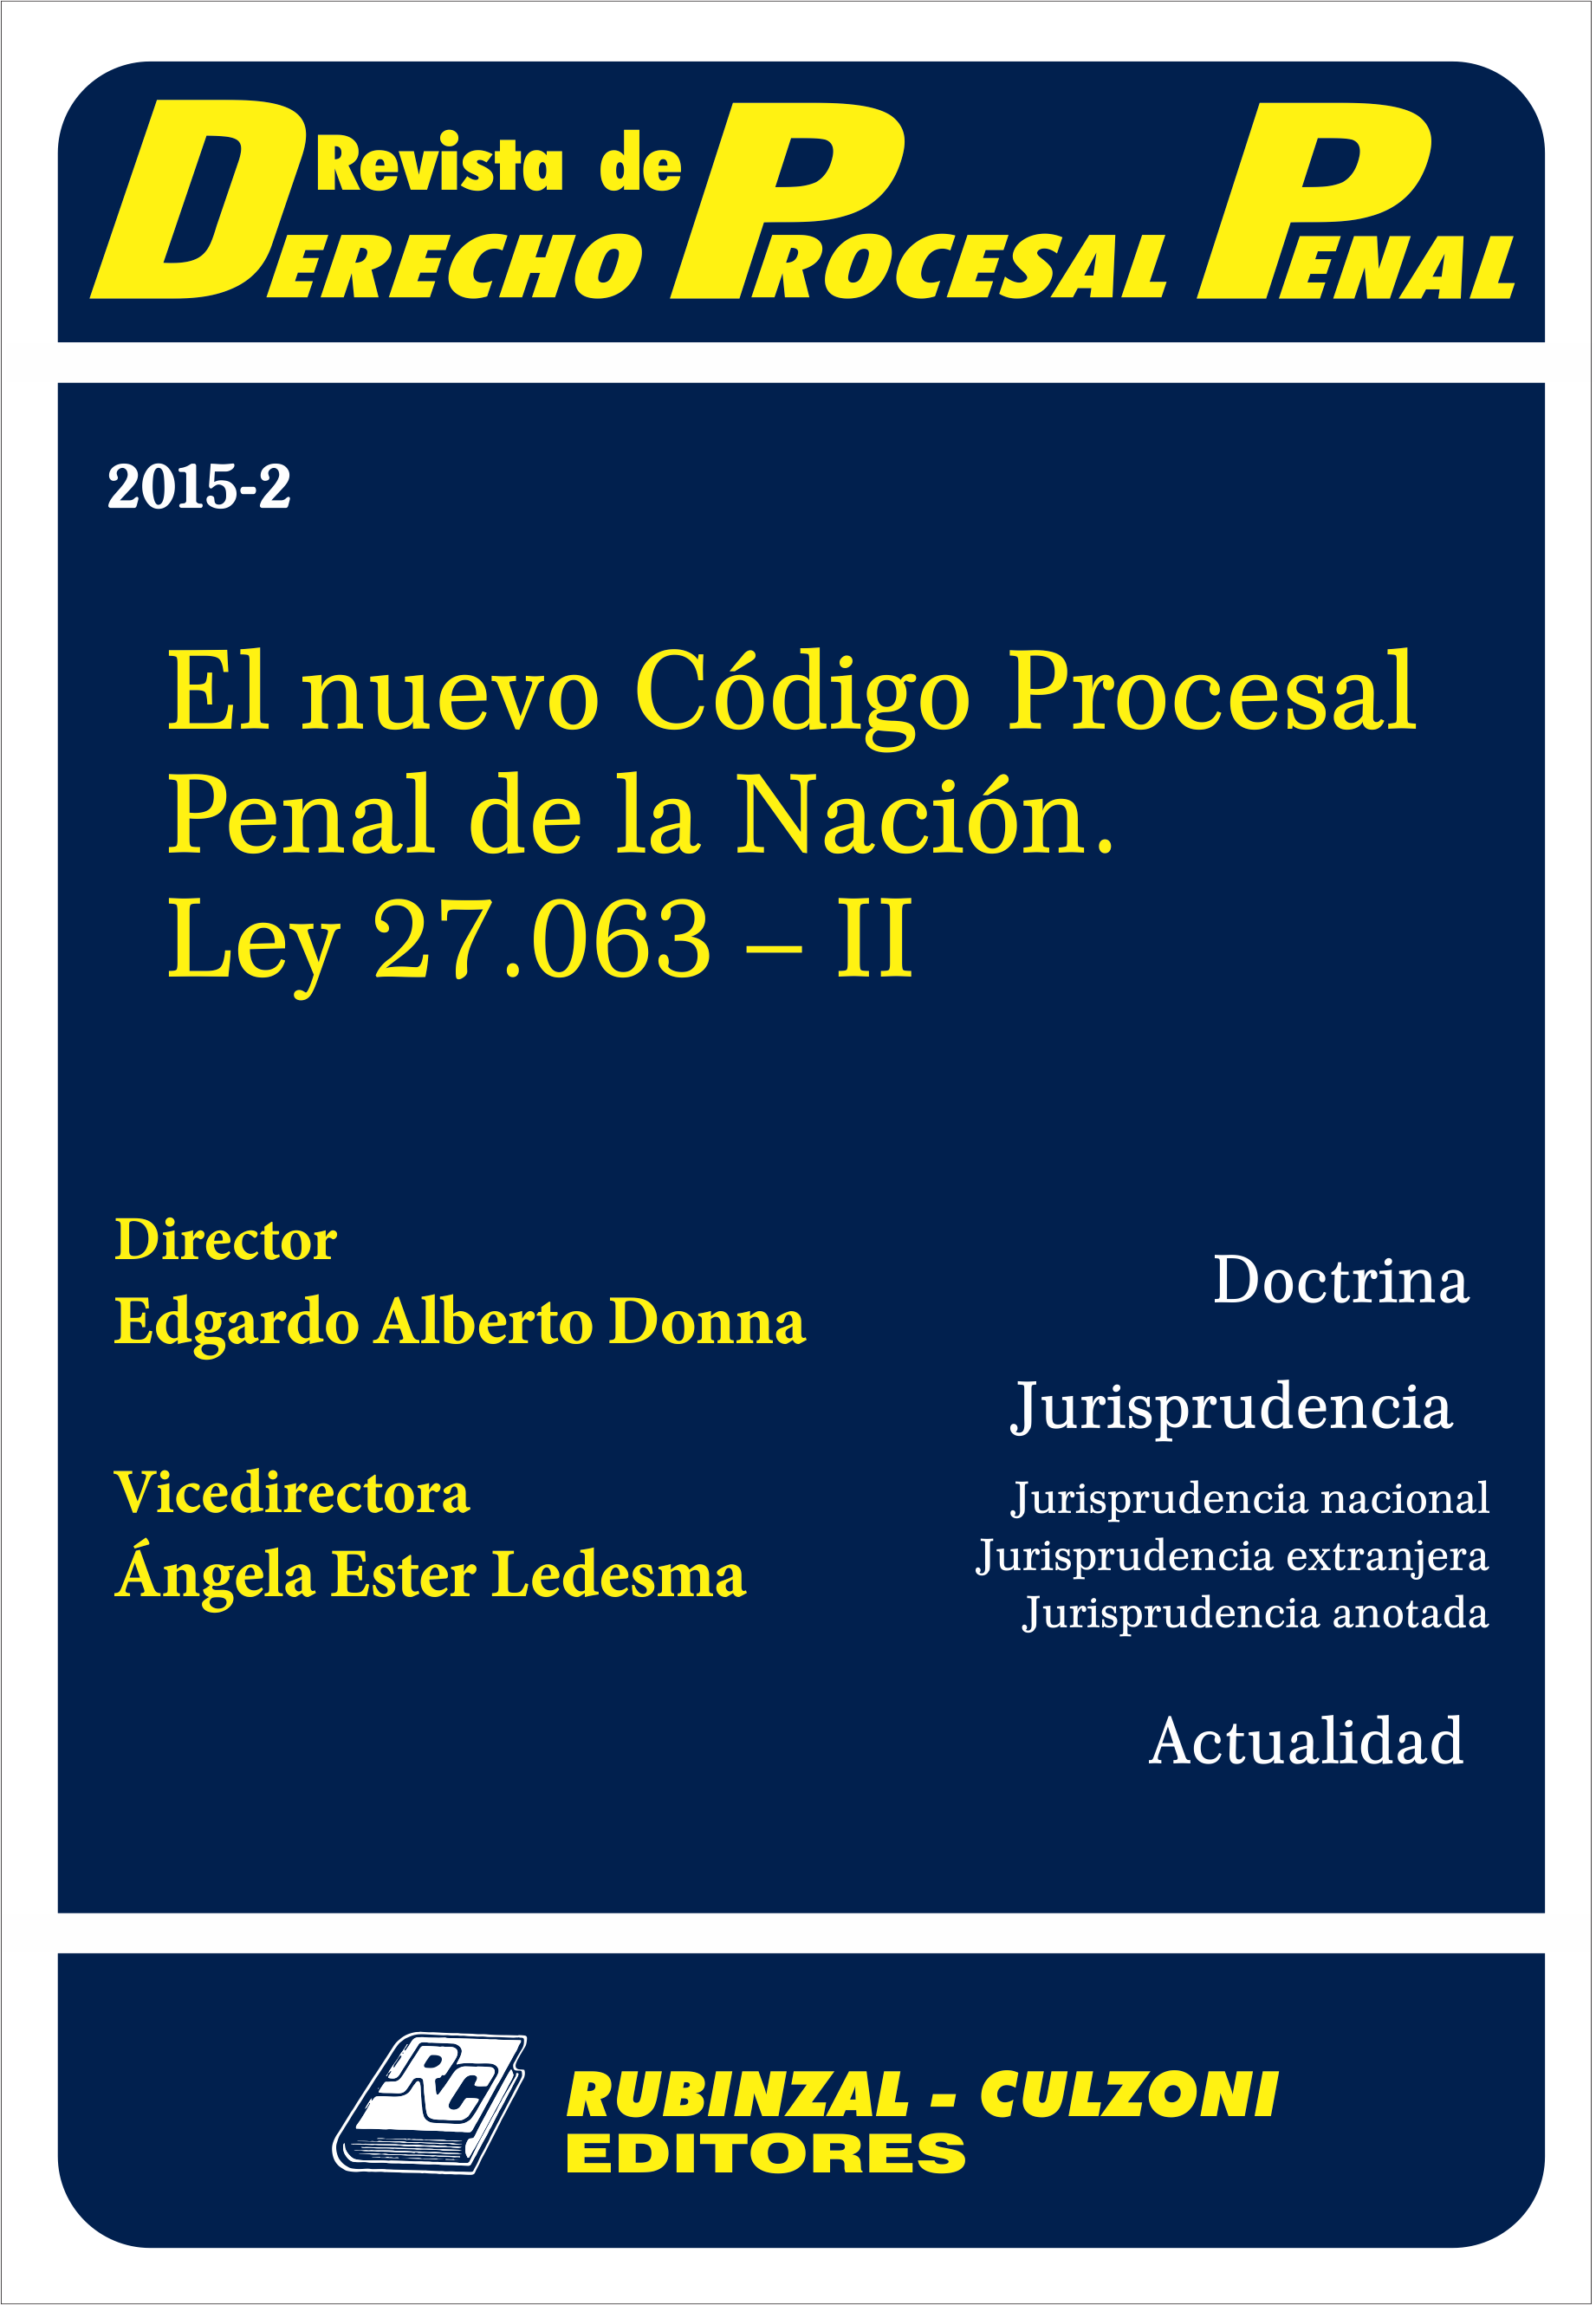  - El nuevo Código Procesal Penal de la Nación. Ley 27.063 - II [2015-2]